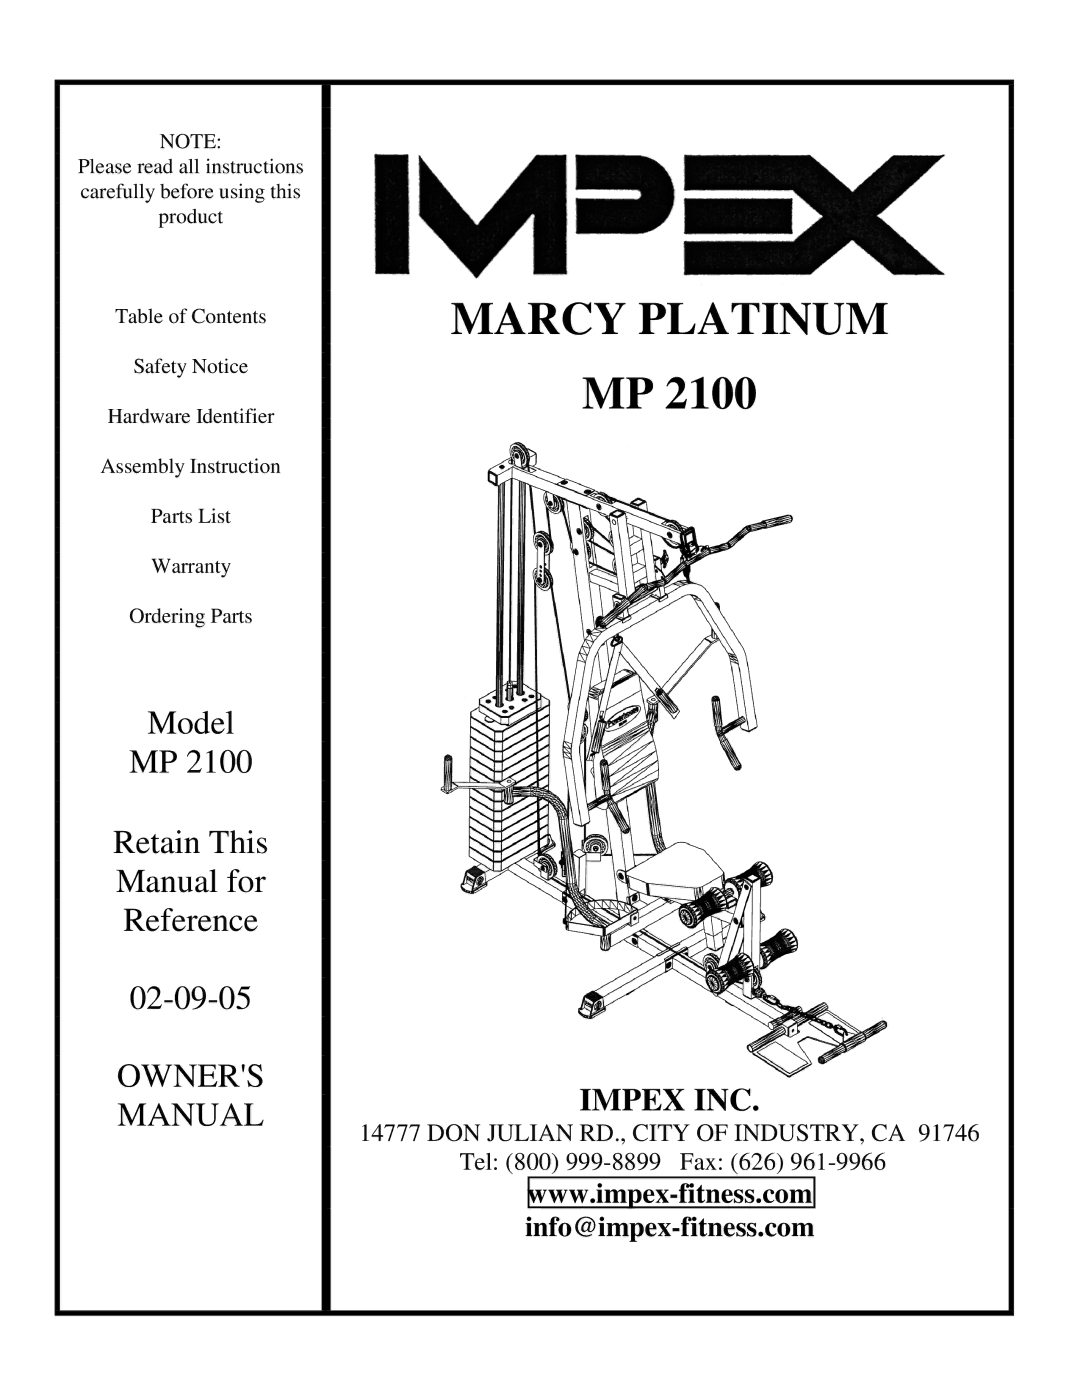 Impex MP 2100 manual Marcy Platinum 